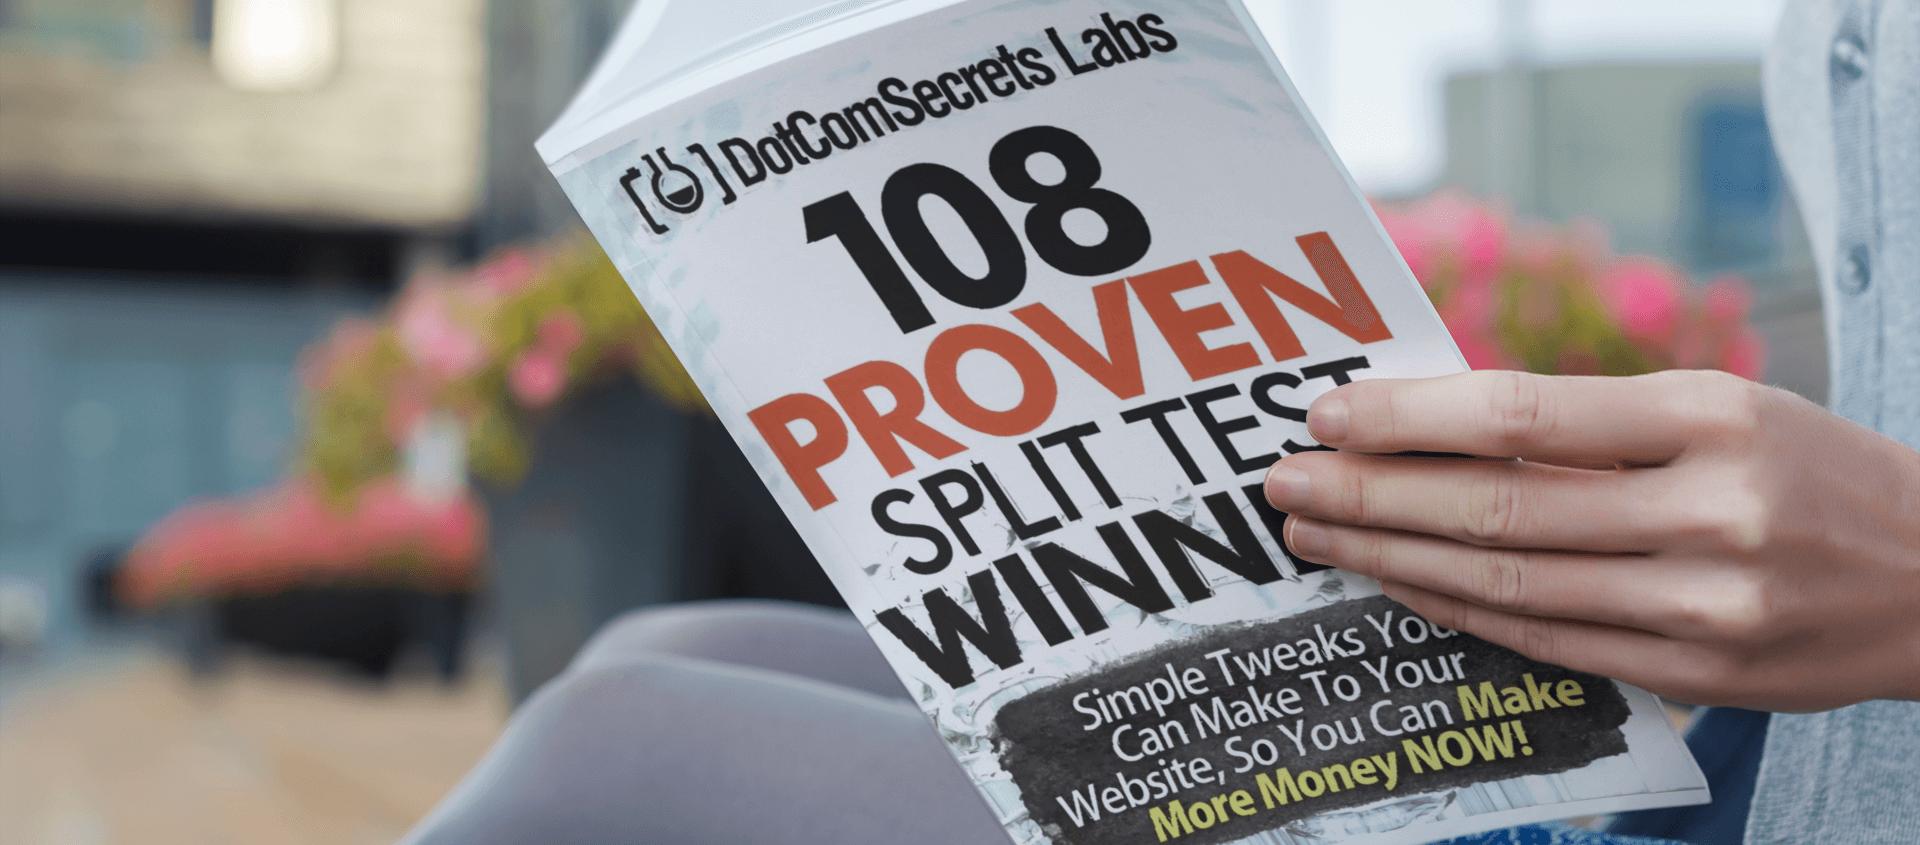 108 proven split test winners book